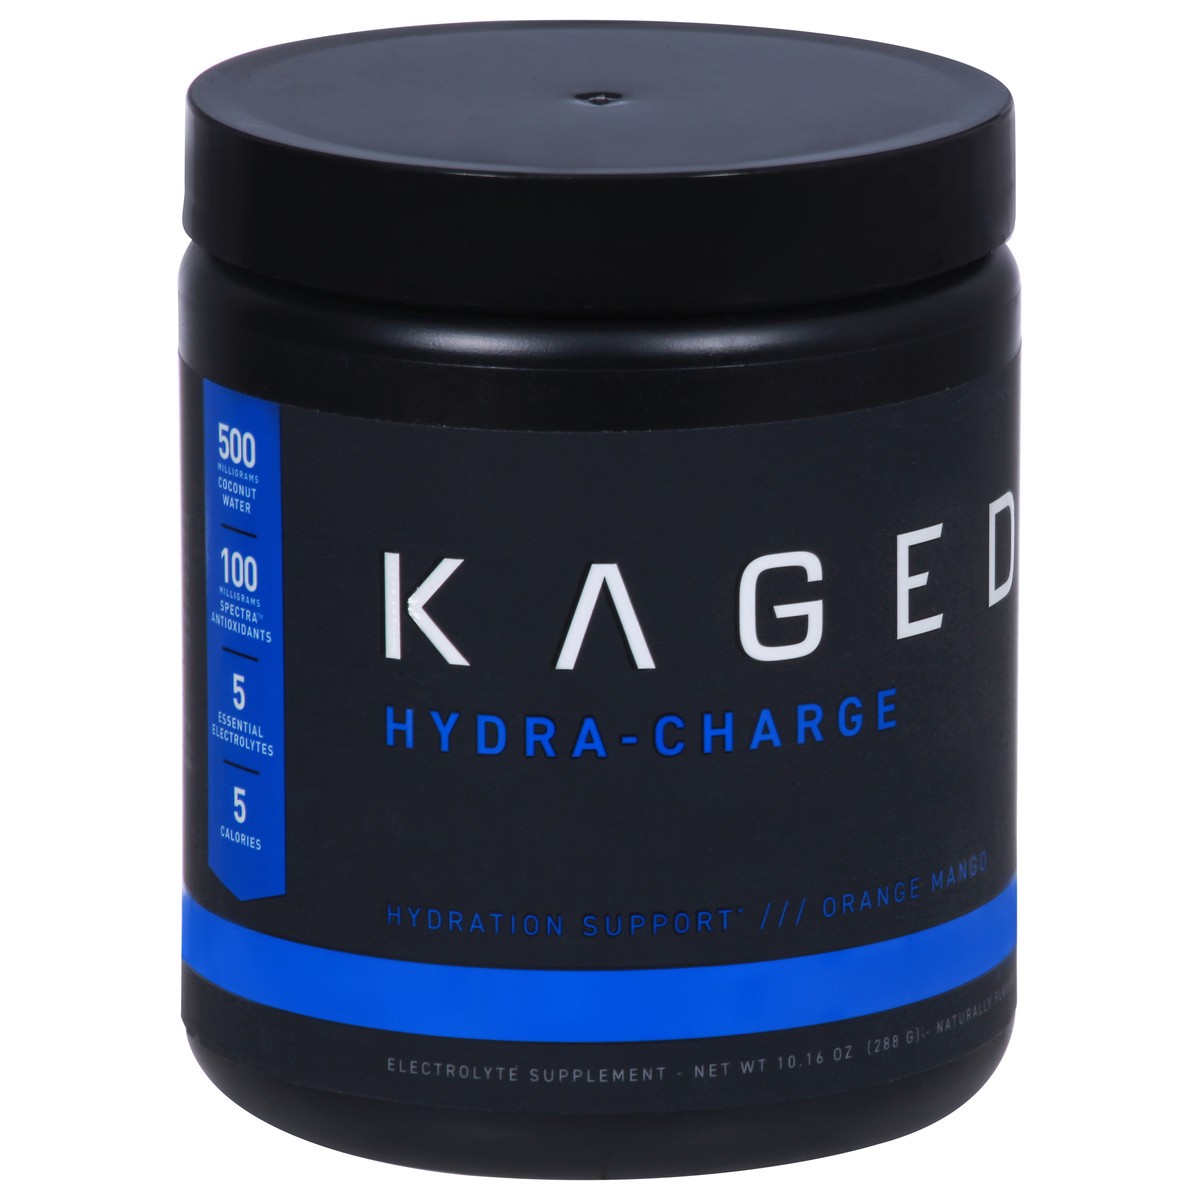 slide 2 of 9, Kaged Hydra-Charge Orange Mango Hydration Support 10.16 oz, 9.73 oz